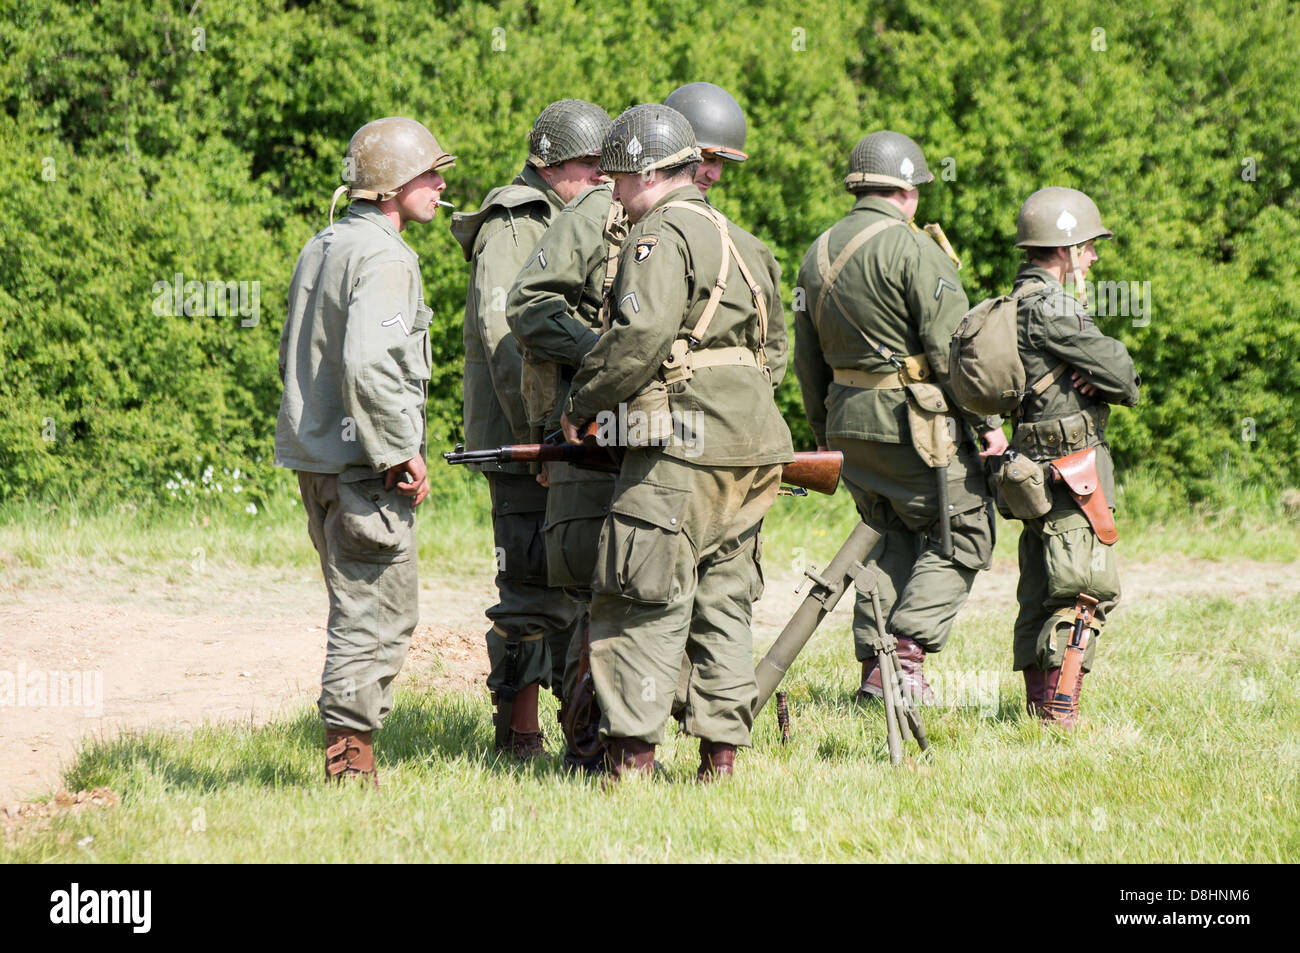 Overlord, D-Day rievocazione a Denmead 2013. Un gruppo di soldati americani in piedi e parlare mentre vi rilassate. Foto Stock